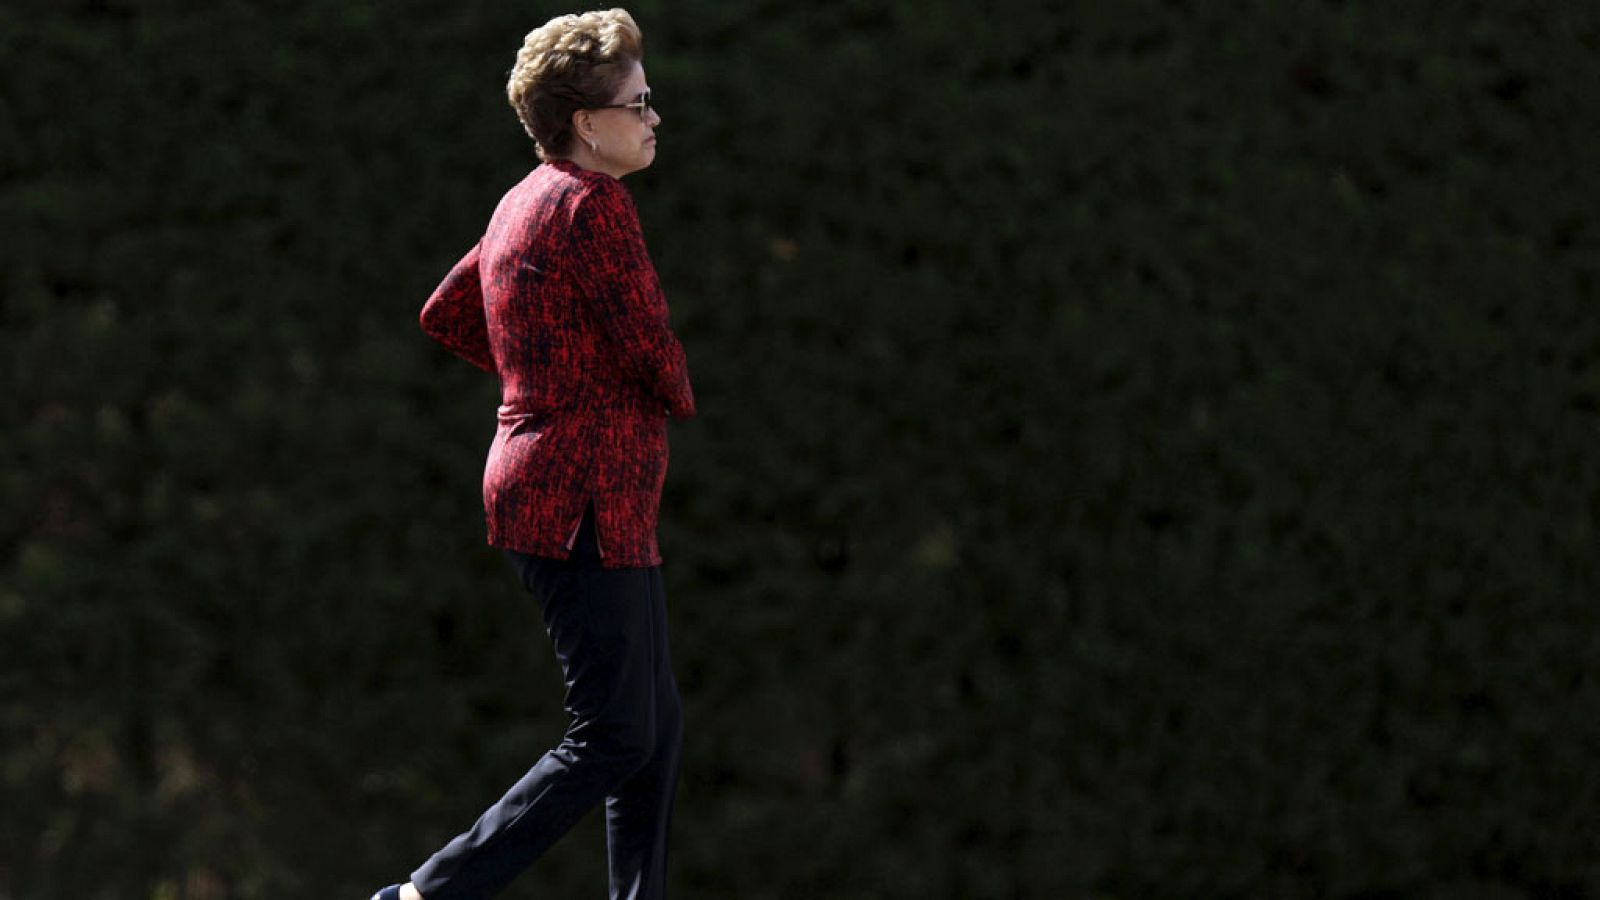 Dilma Roussef caminando por los jardines del Palacio del Planalto (Brasilia).